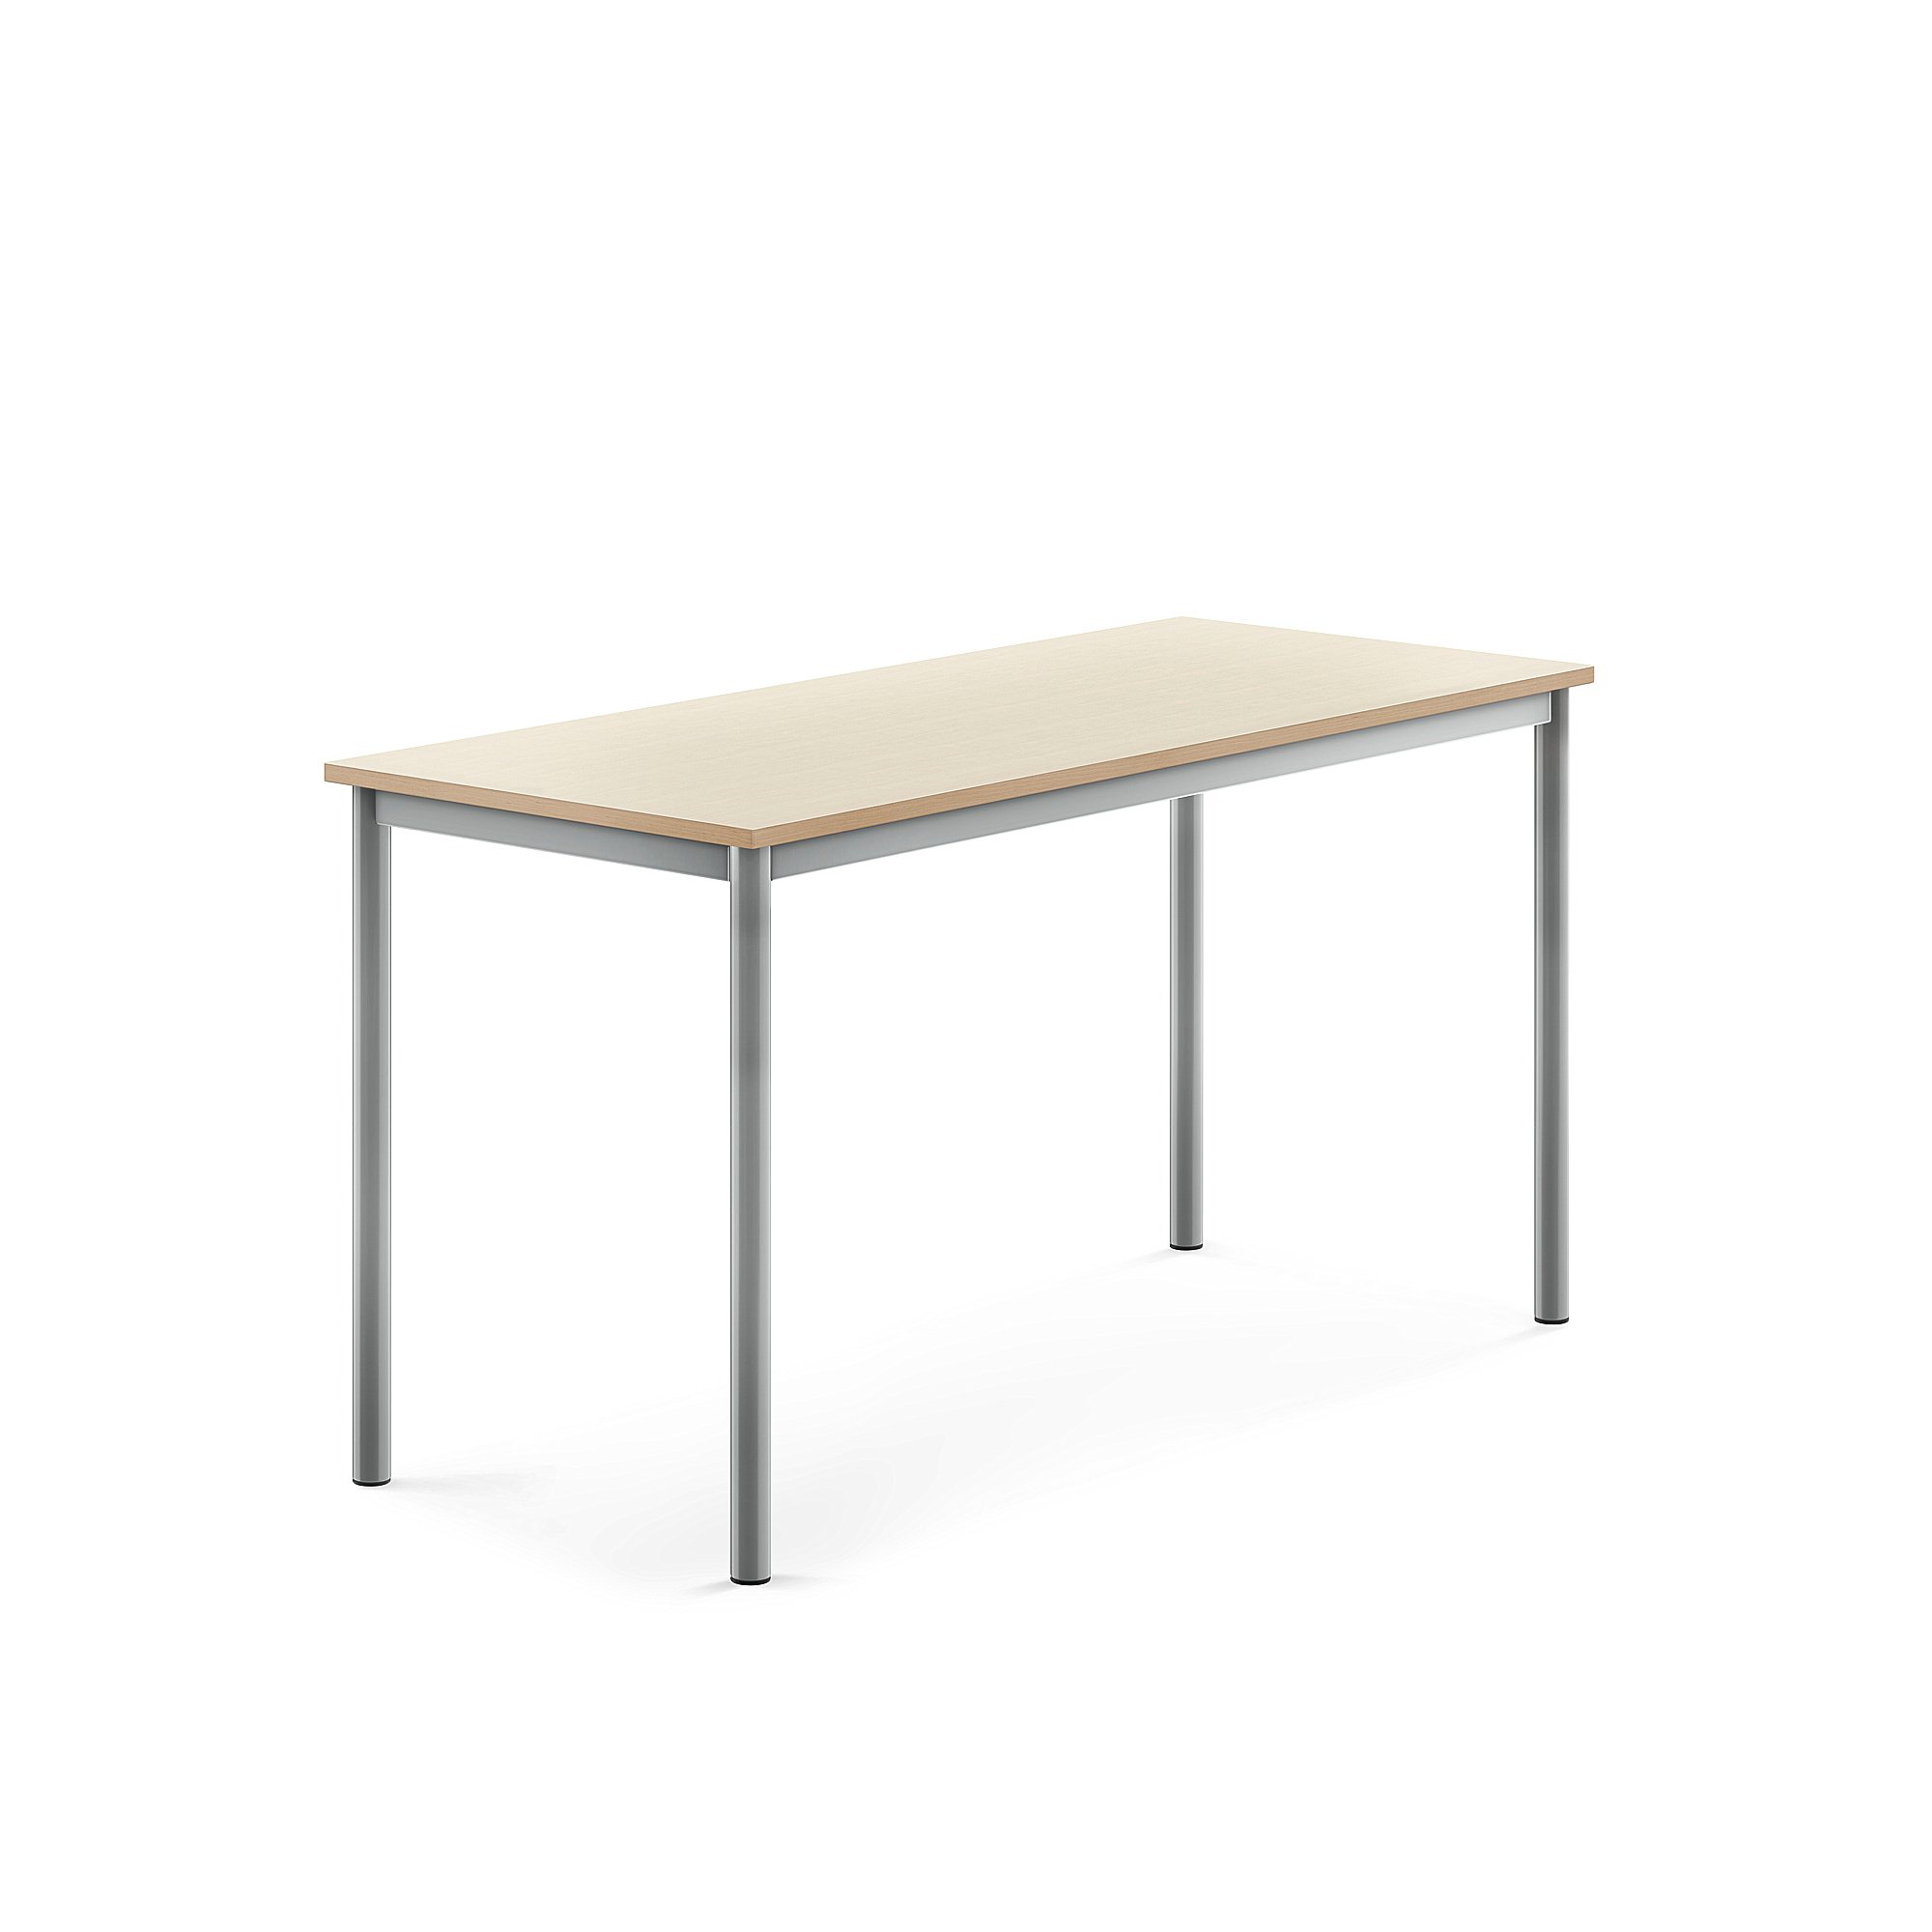 Stůl BORÅS, 1400x600x720 mm, stříbrné nohy,HPL deska, bříza